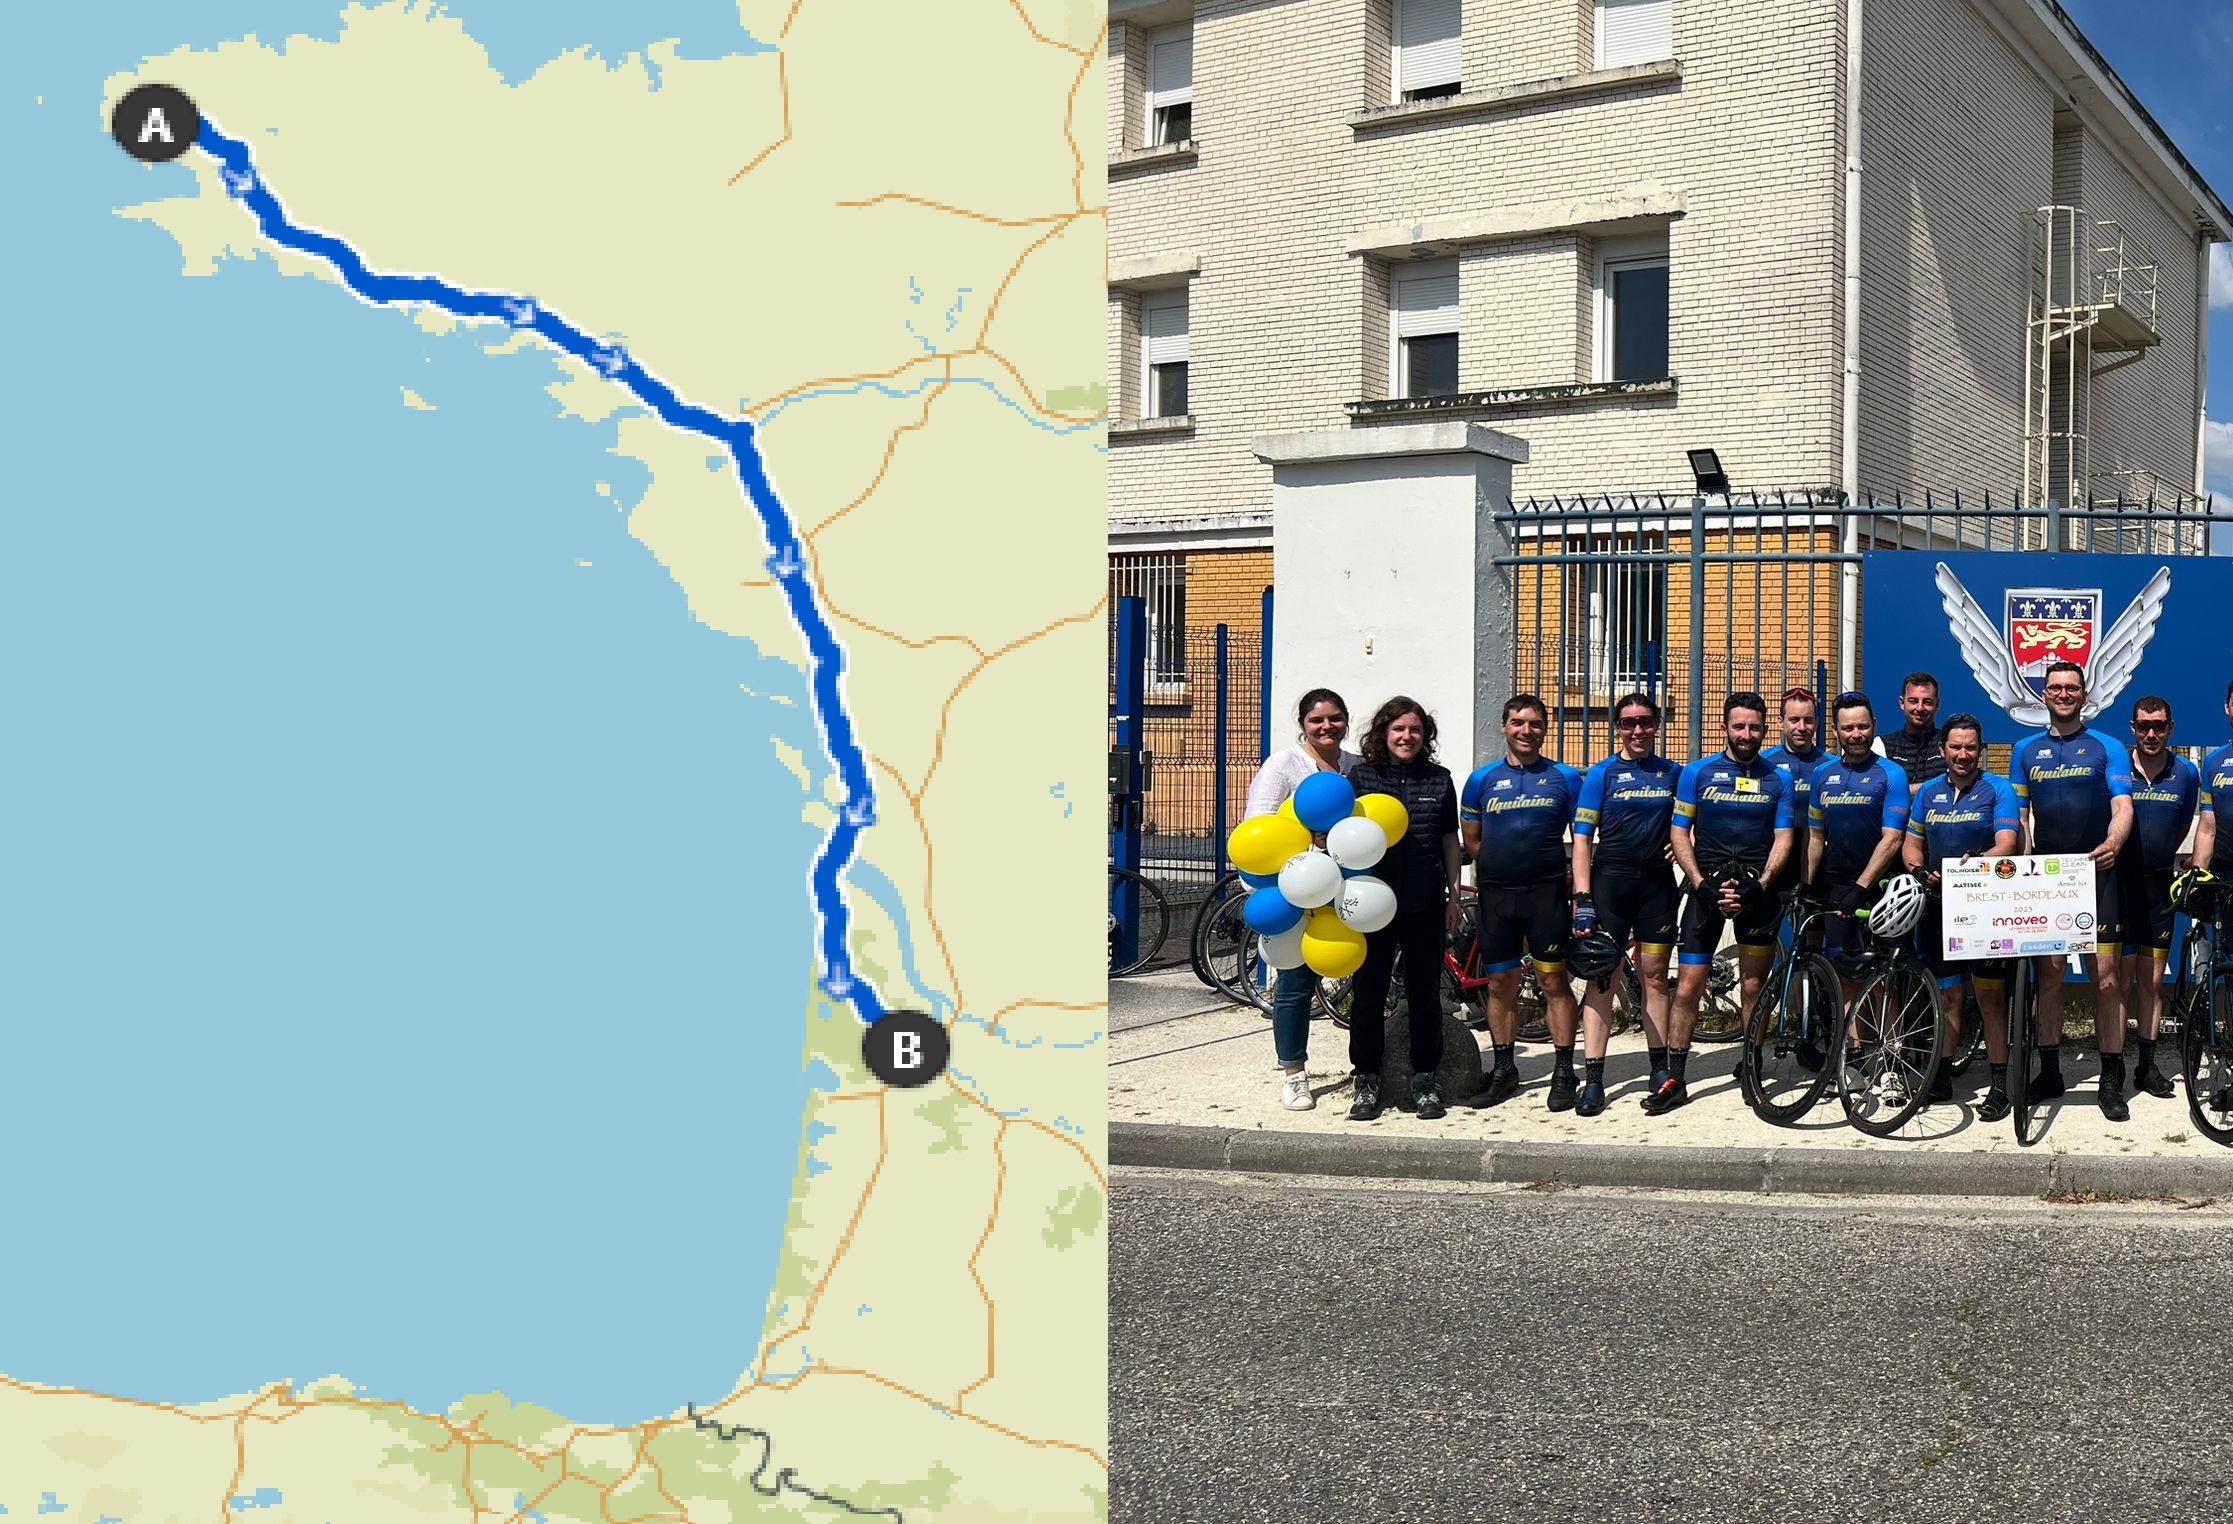  22 marins de la FREMM Aquitaine rallient Bordeaux à vélo depuis Brest en 4 jours